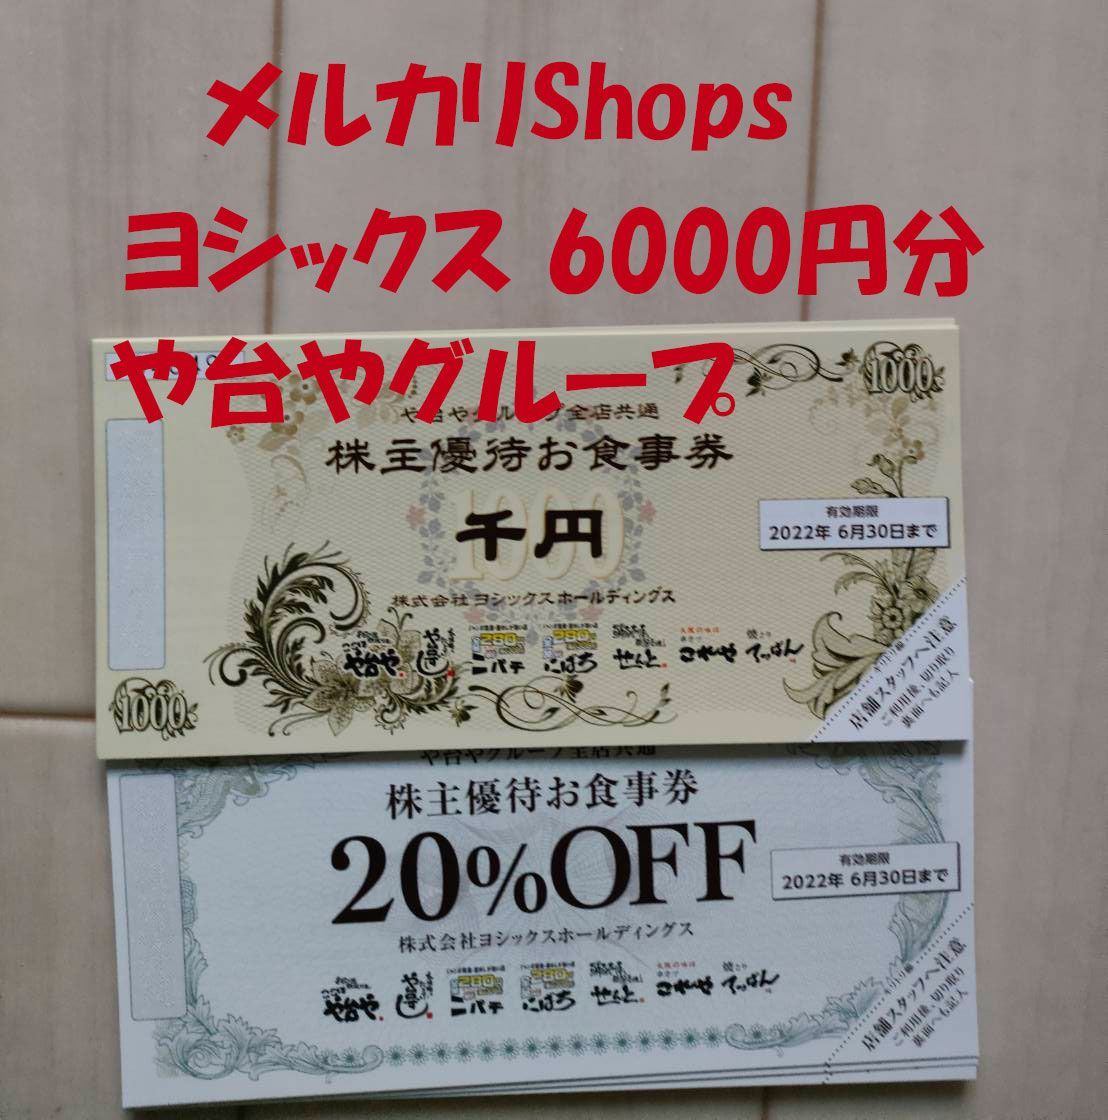 ヨシックス 株主優待 6000円分+20%OFF券(最短2020年9月末期限)